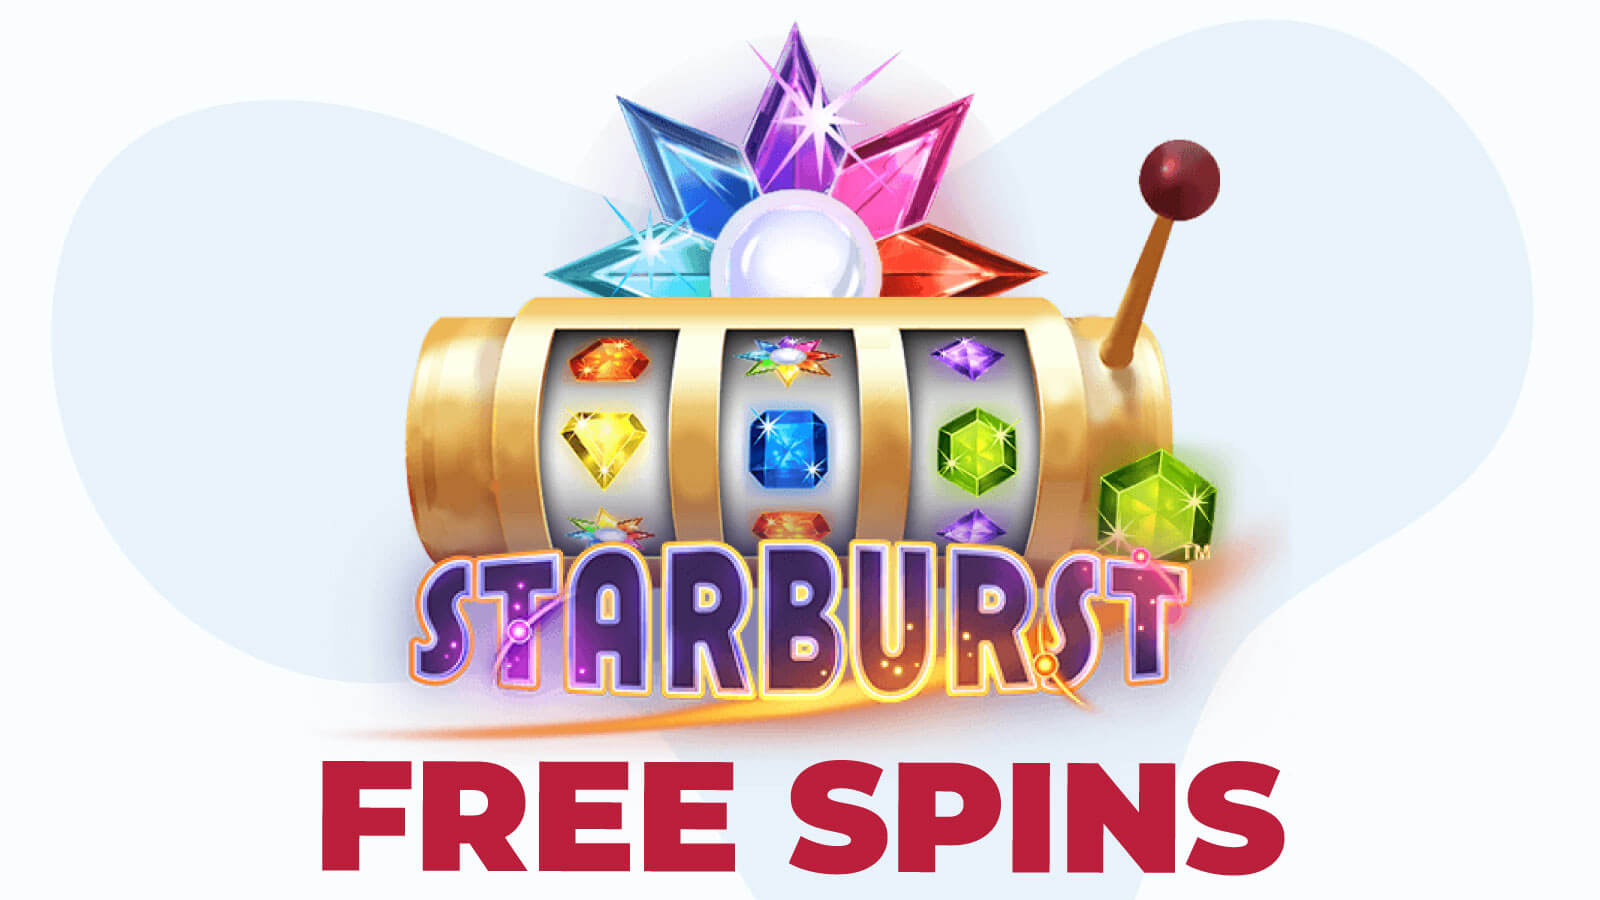 starburst free spins no deposit